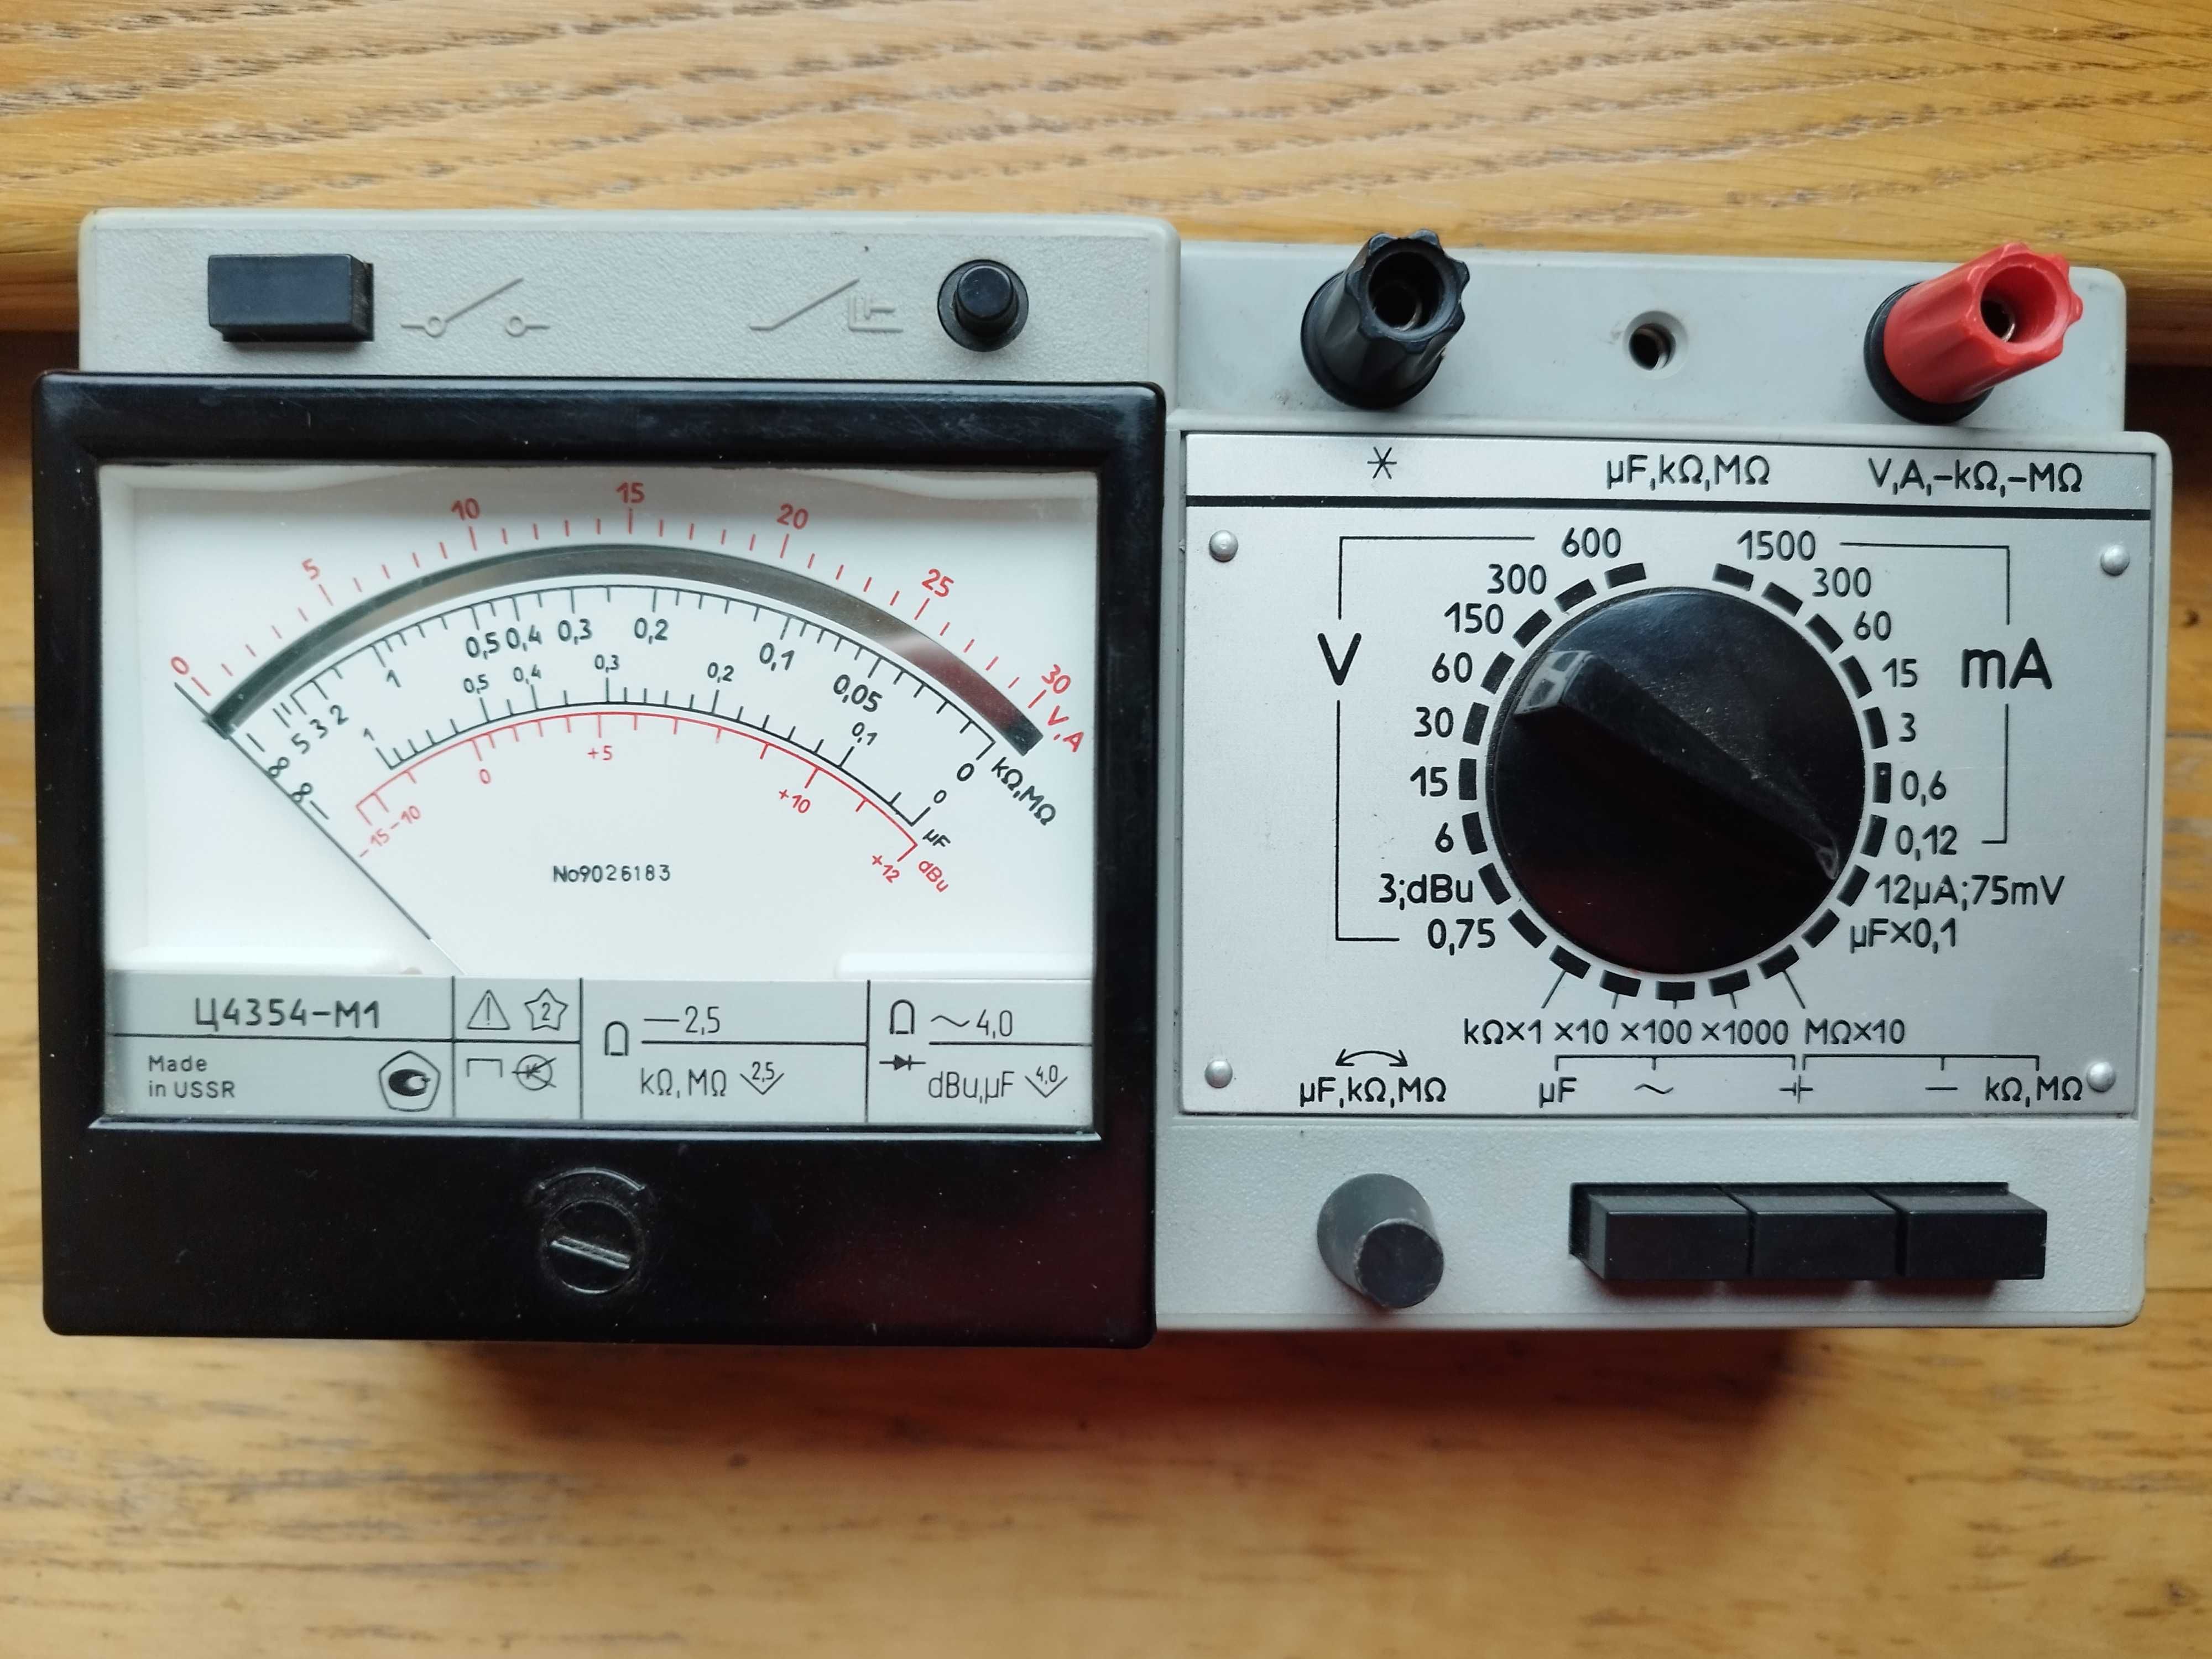 Miernik uniwersalny analogowy radziecki Ц4354-М1 / C4354-M1